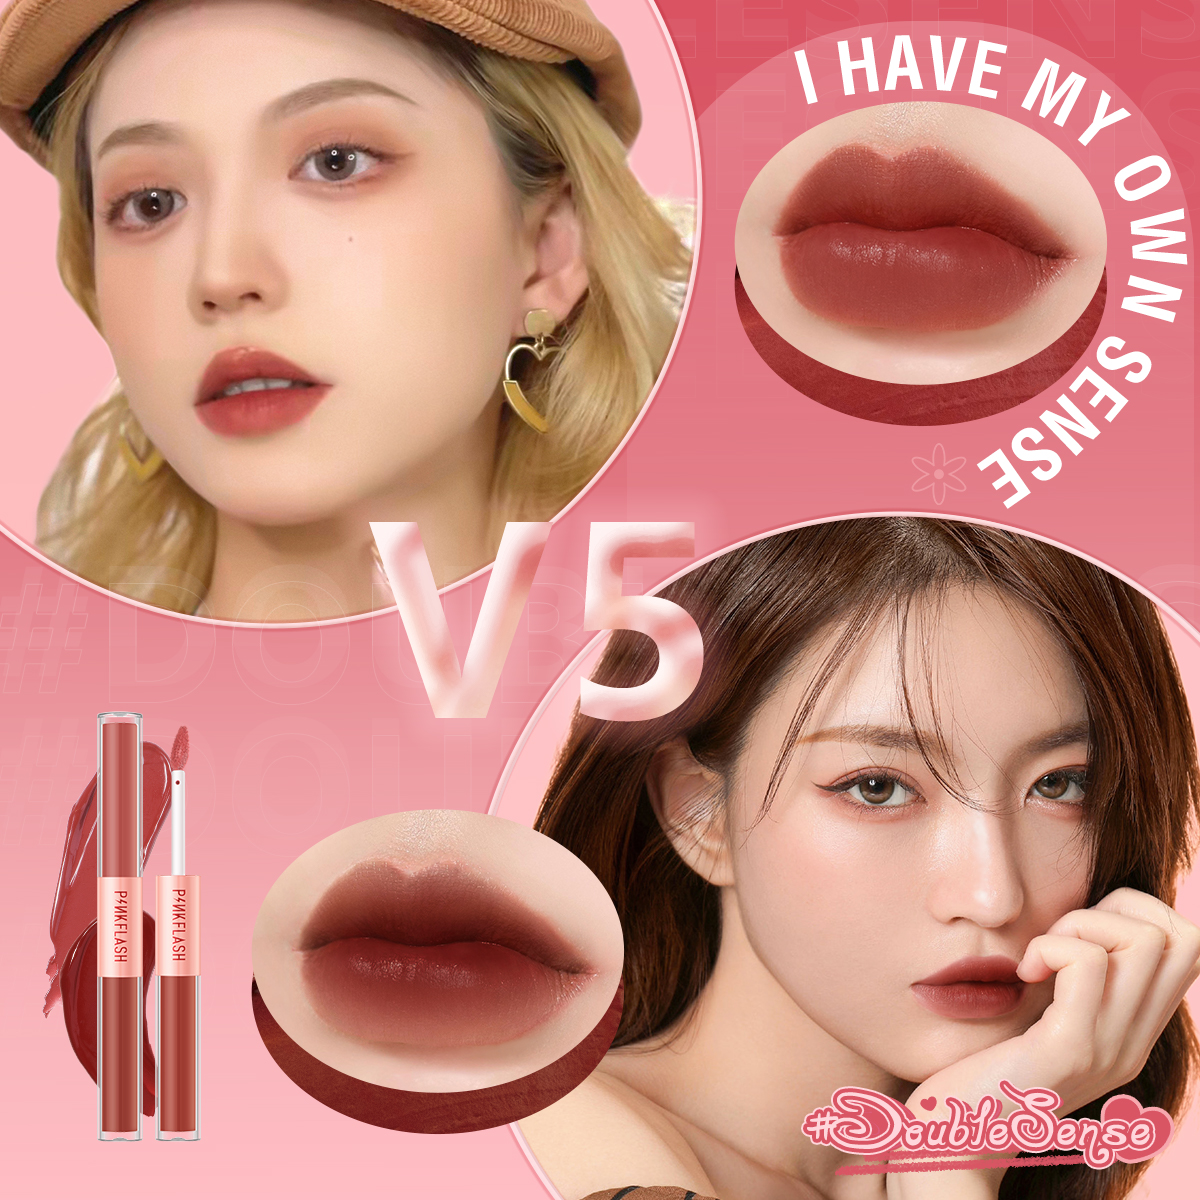 pinkflash duo lipstick